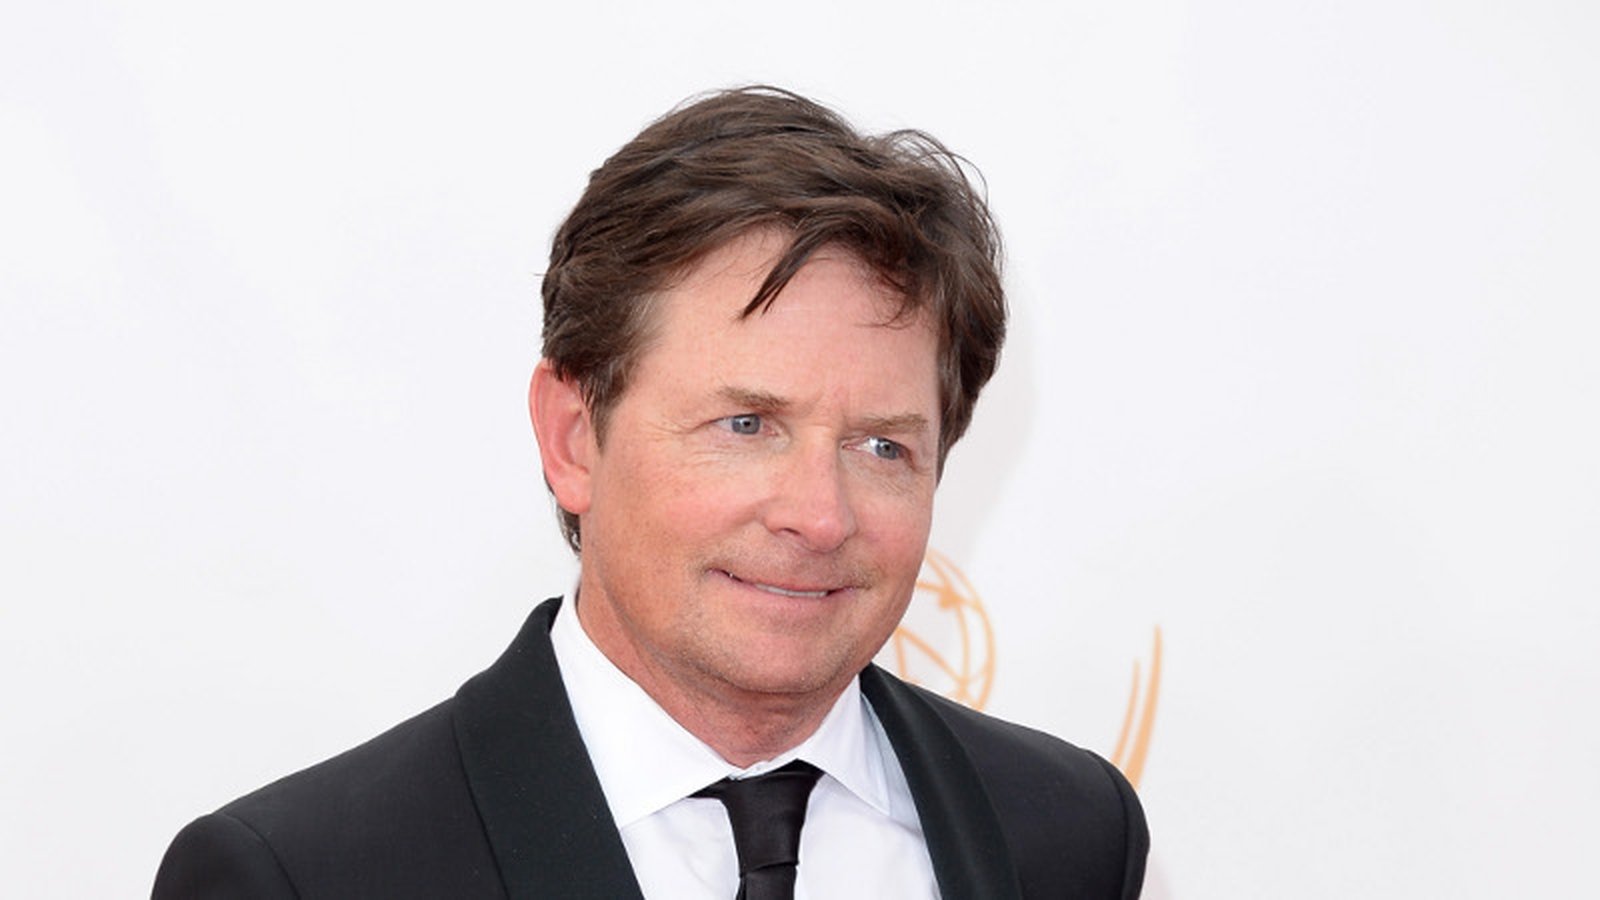 Michael J Fox opens up about Parkinson